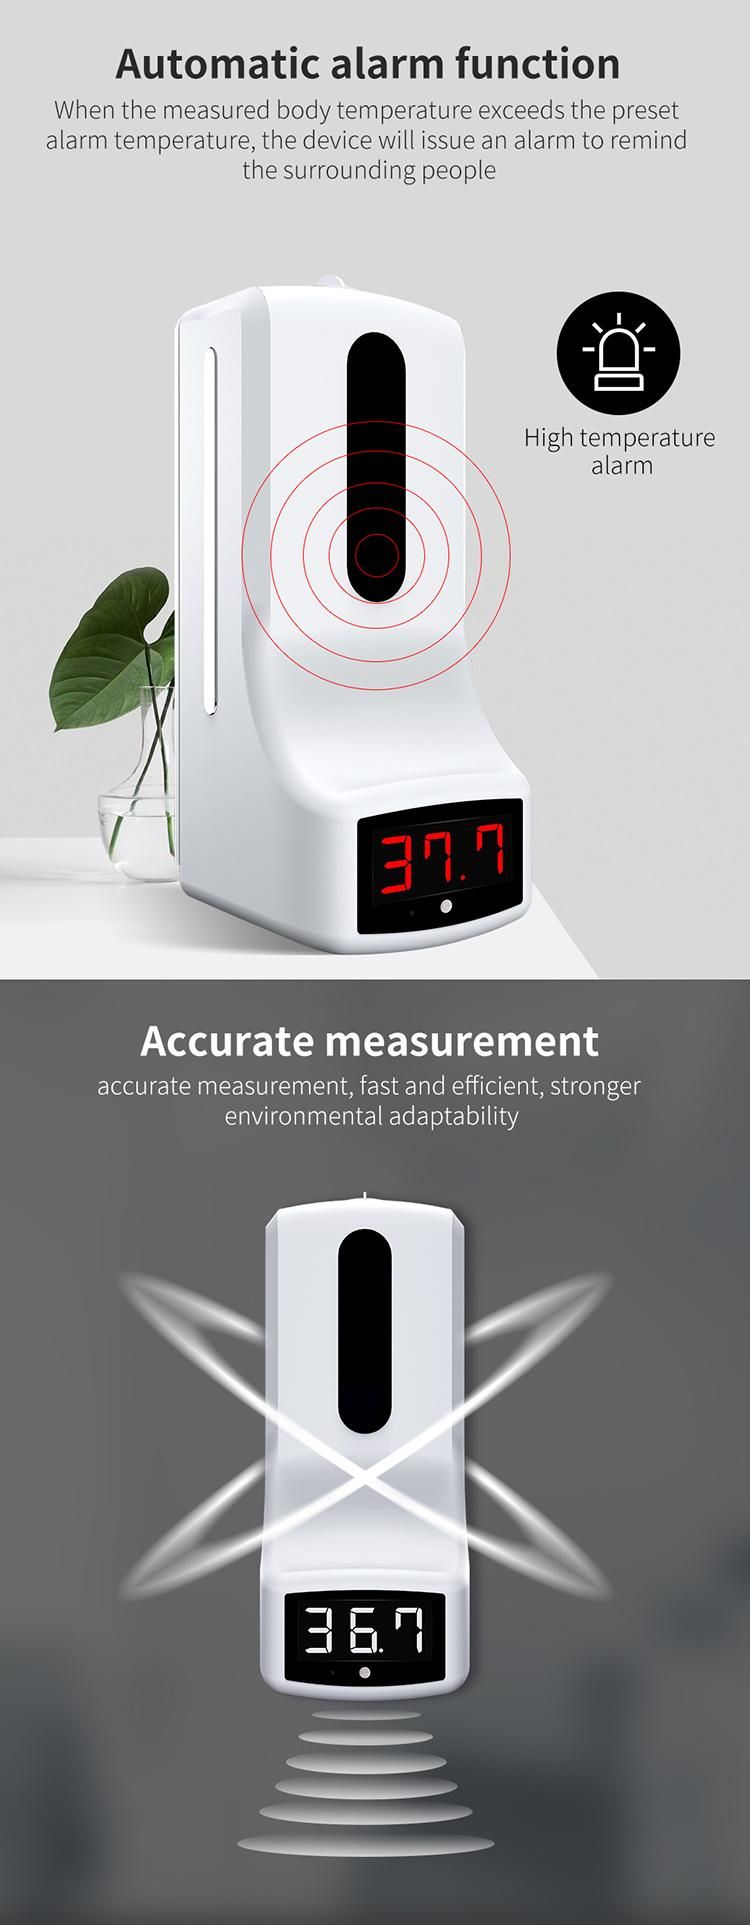 Saige 1000ml K9 Thermometer Intelligent Hand Sanitizer Liquid Dispenser